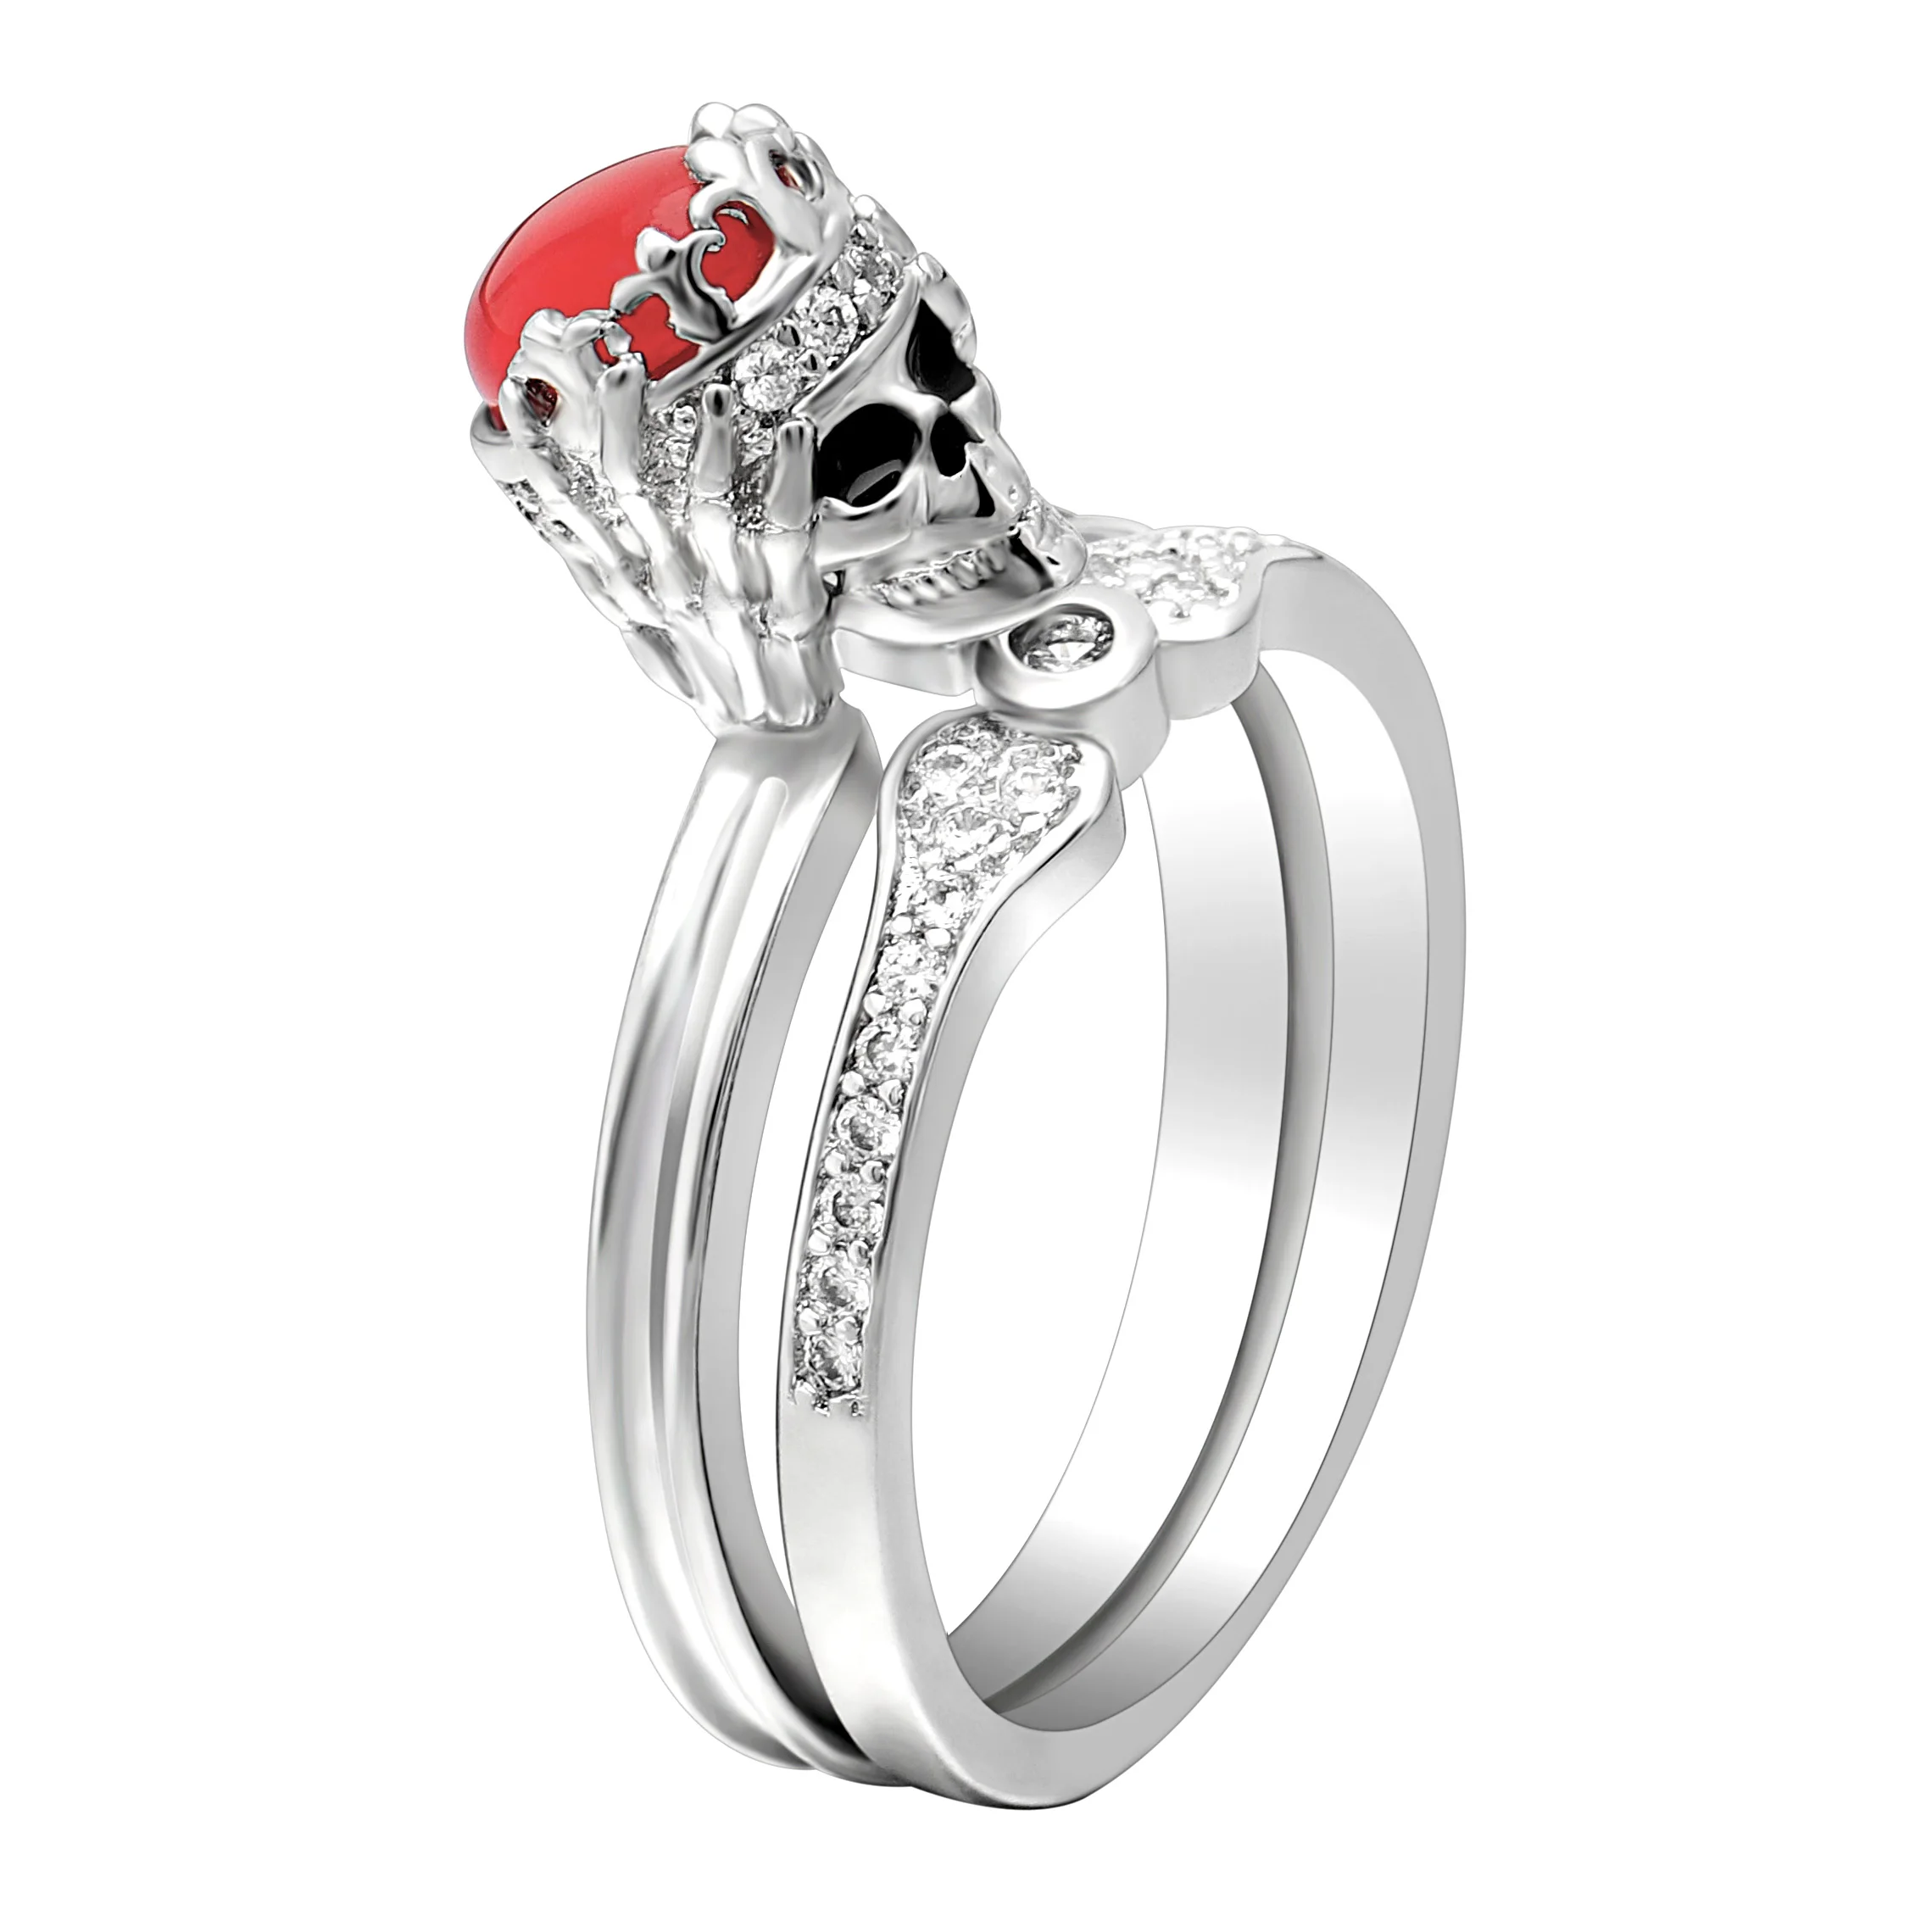 X-Jue Корона Форма кольца Красный CZ камень Серебряный цвет панк череп кольцо наборы для женщин модные украшения обручальные кольца Прямая